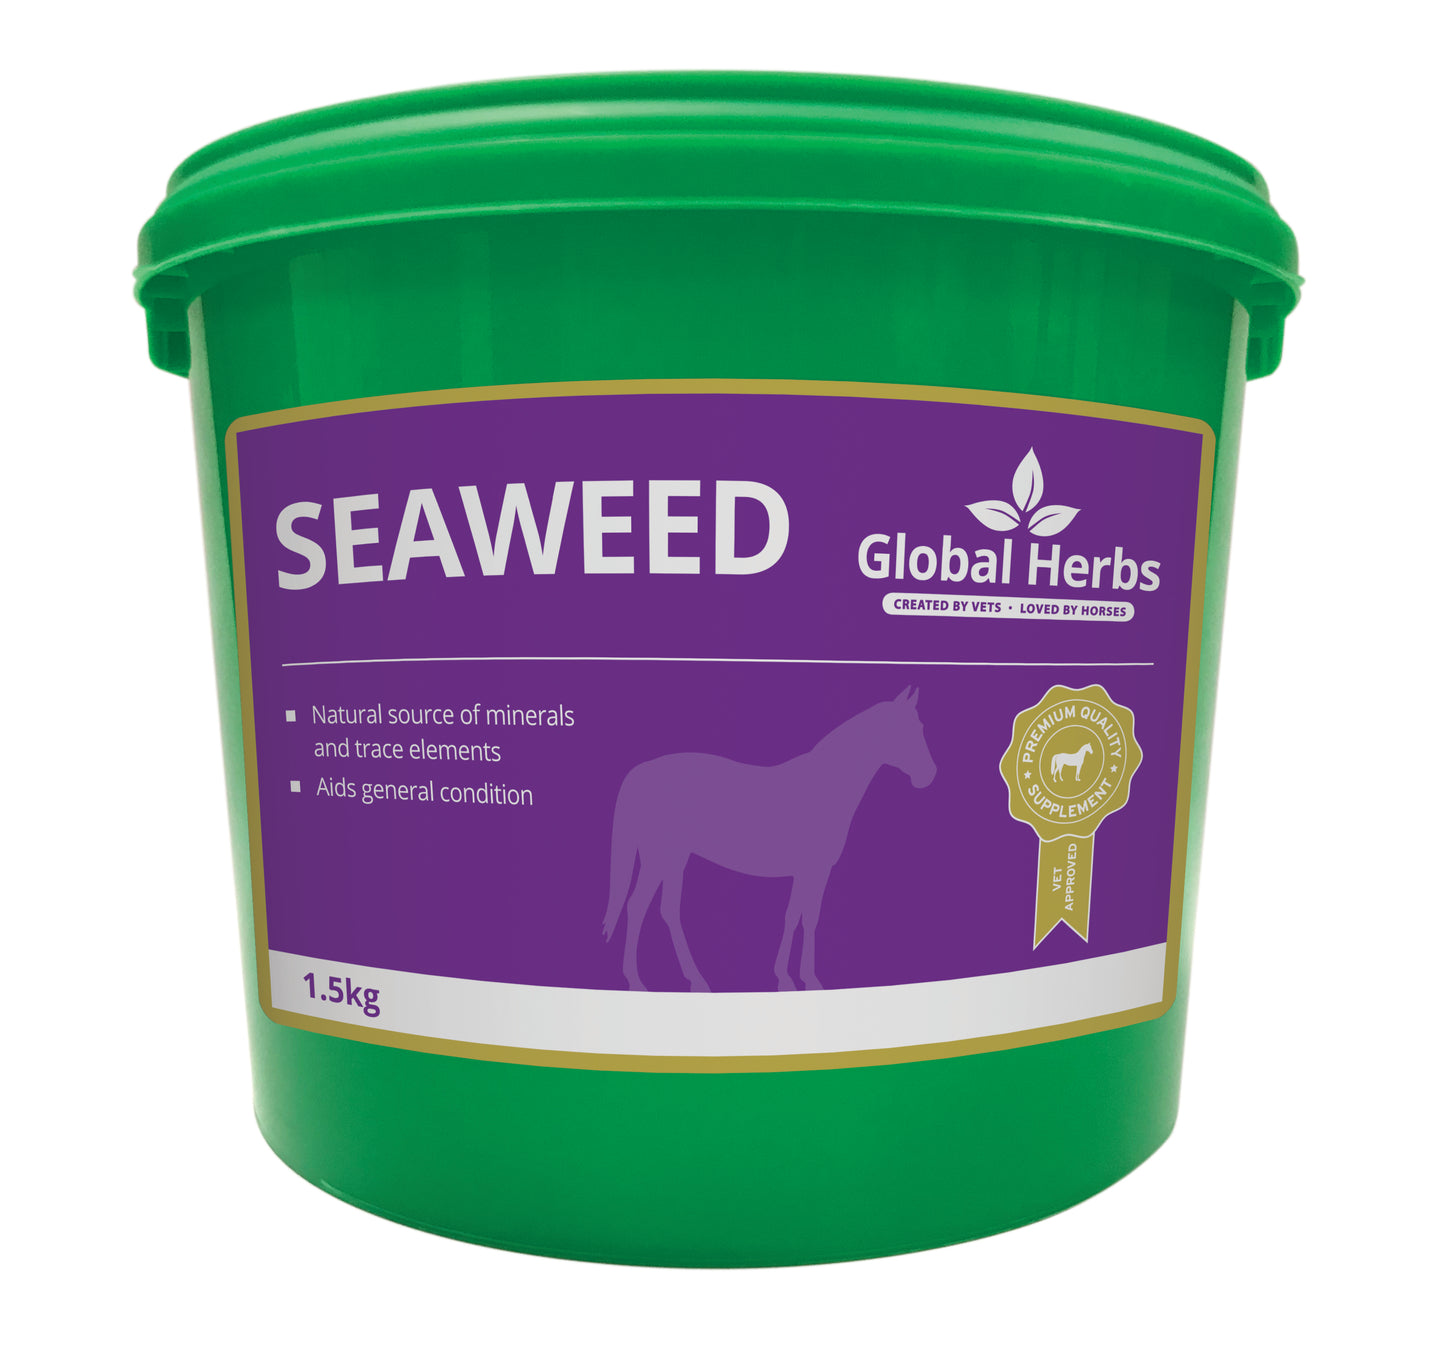 Seaweed - Global Herbs